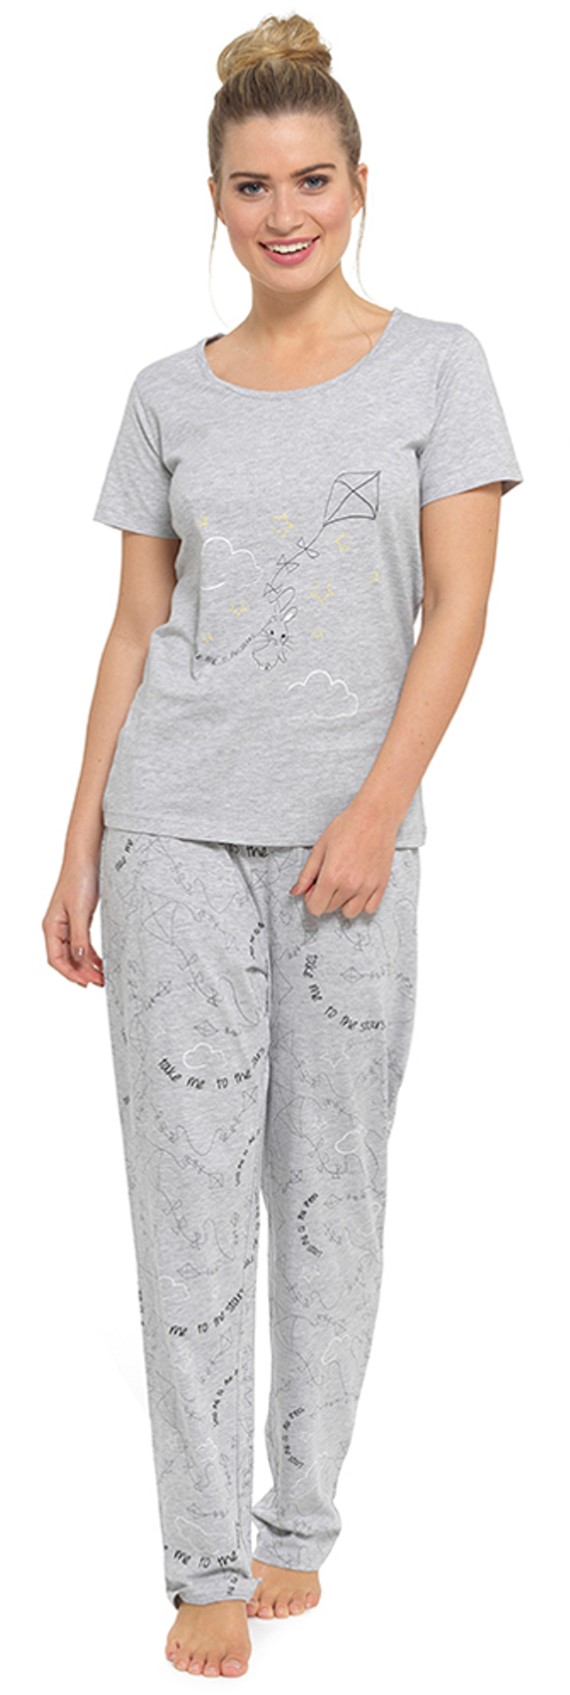 Ladies Pyjamas LN494 Grey.jpg  by Thingimijigs